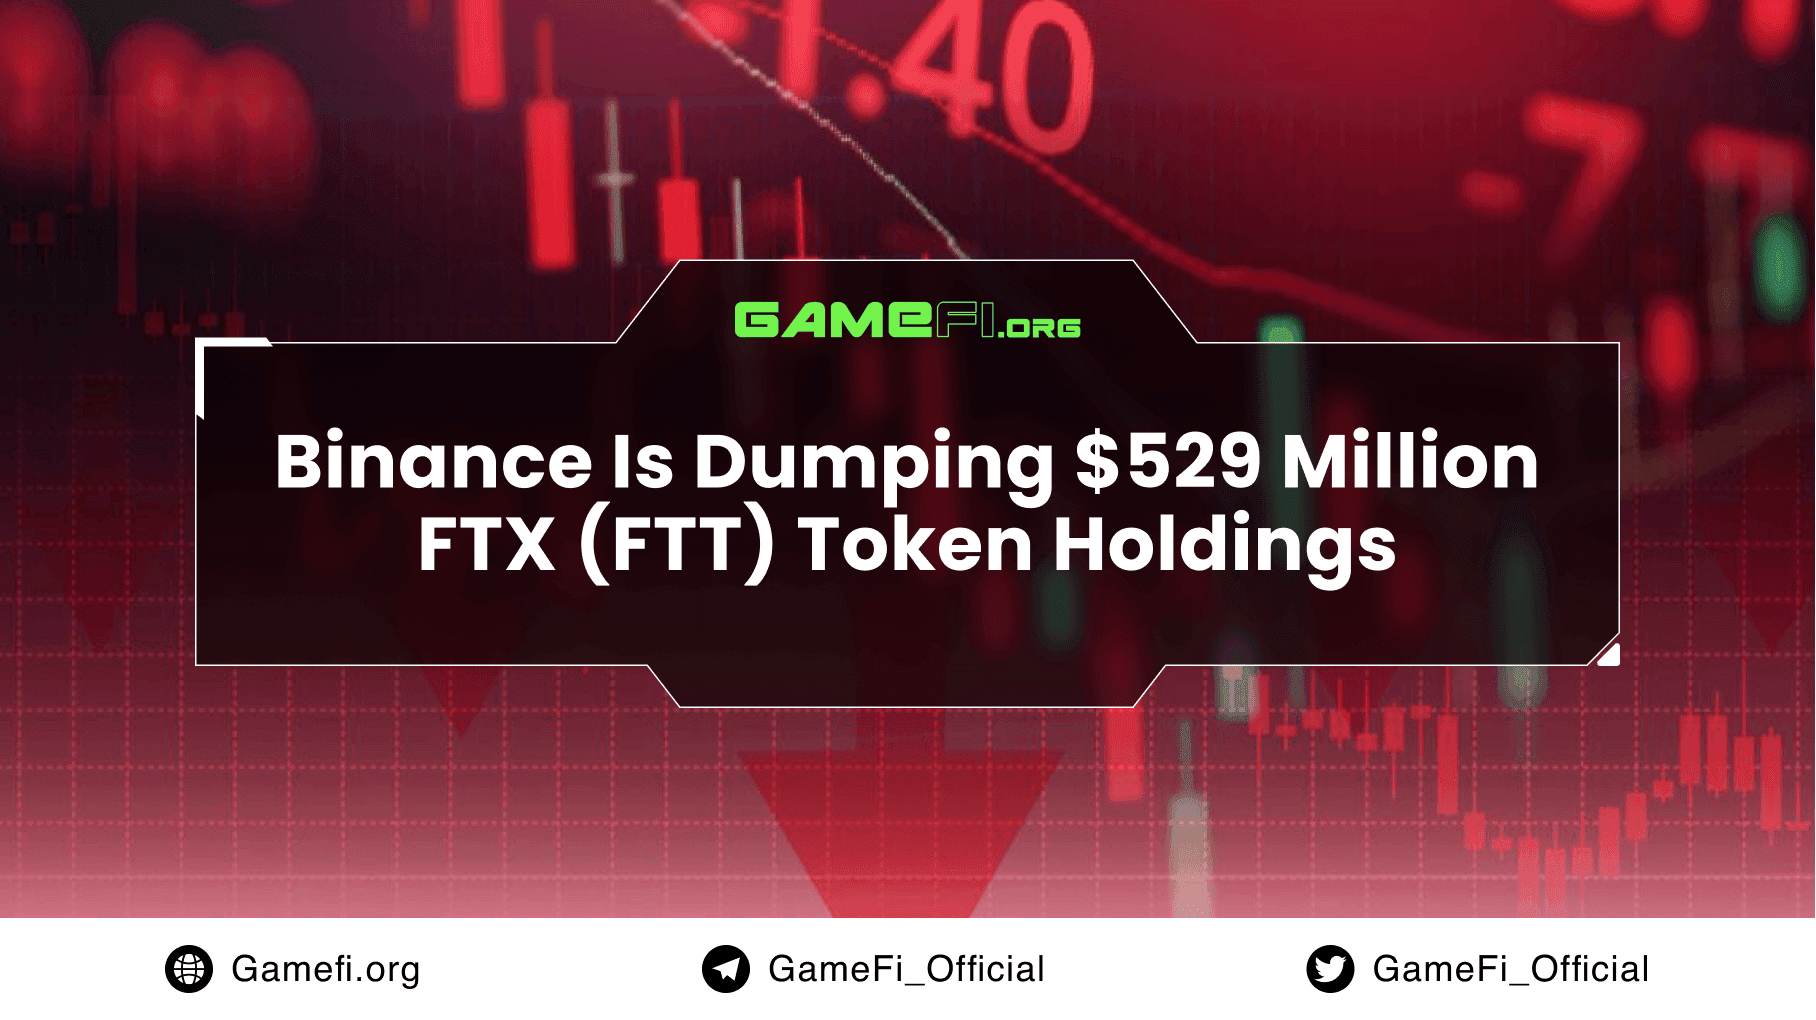 Binance Is Dumping $529 Million FTX (FTT) Token Holdings